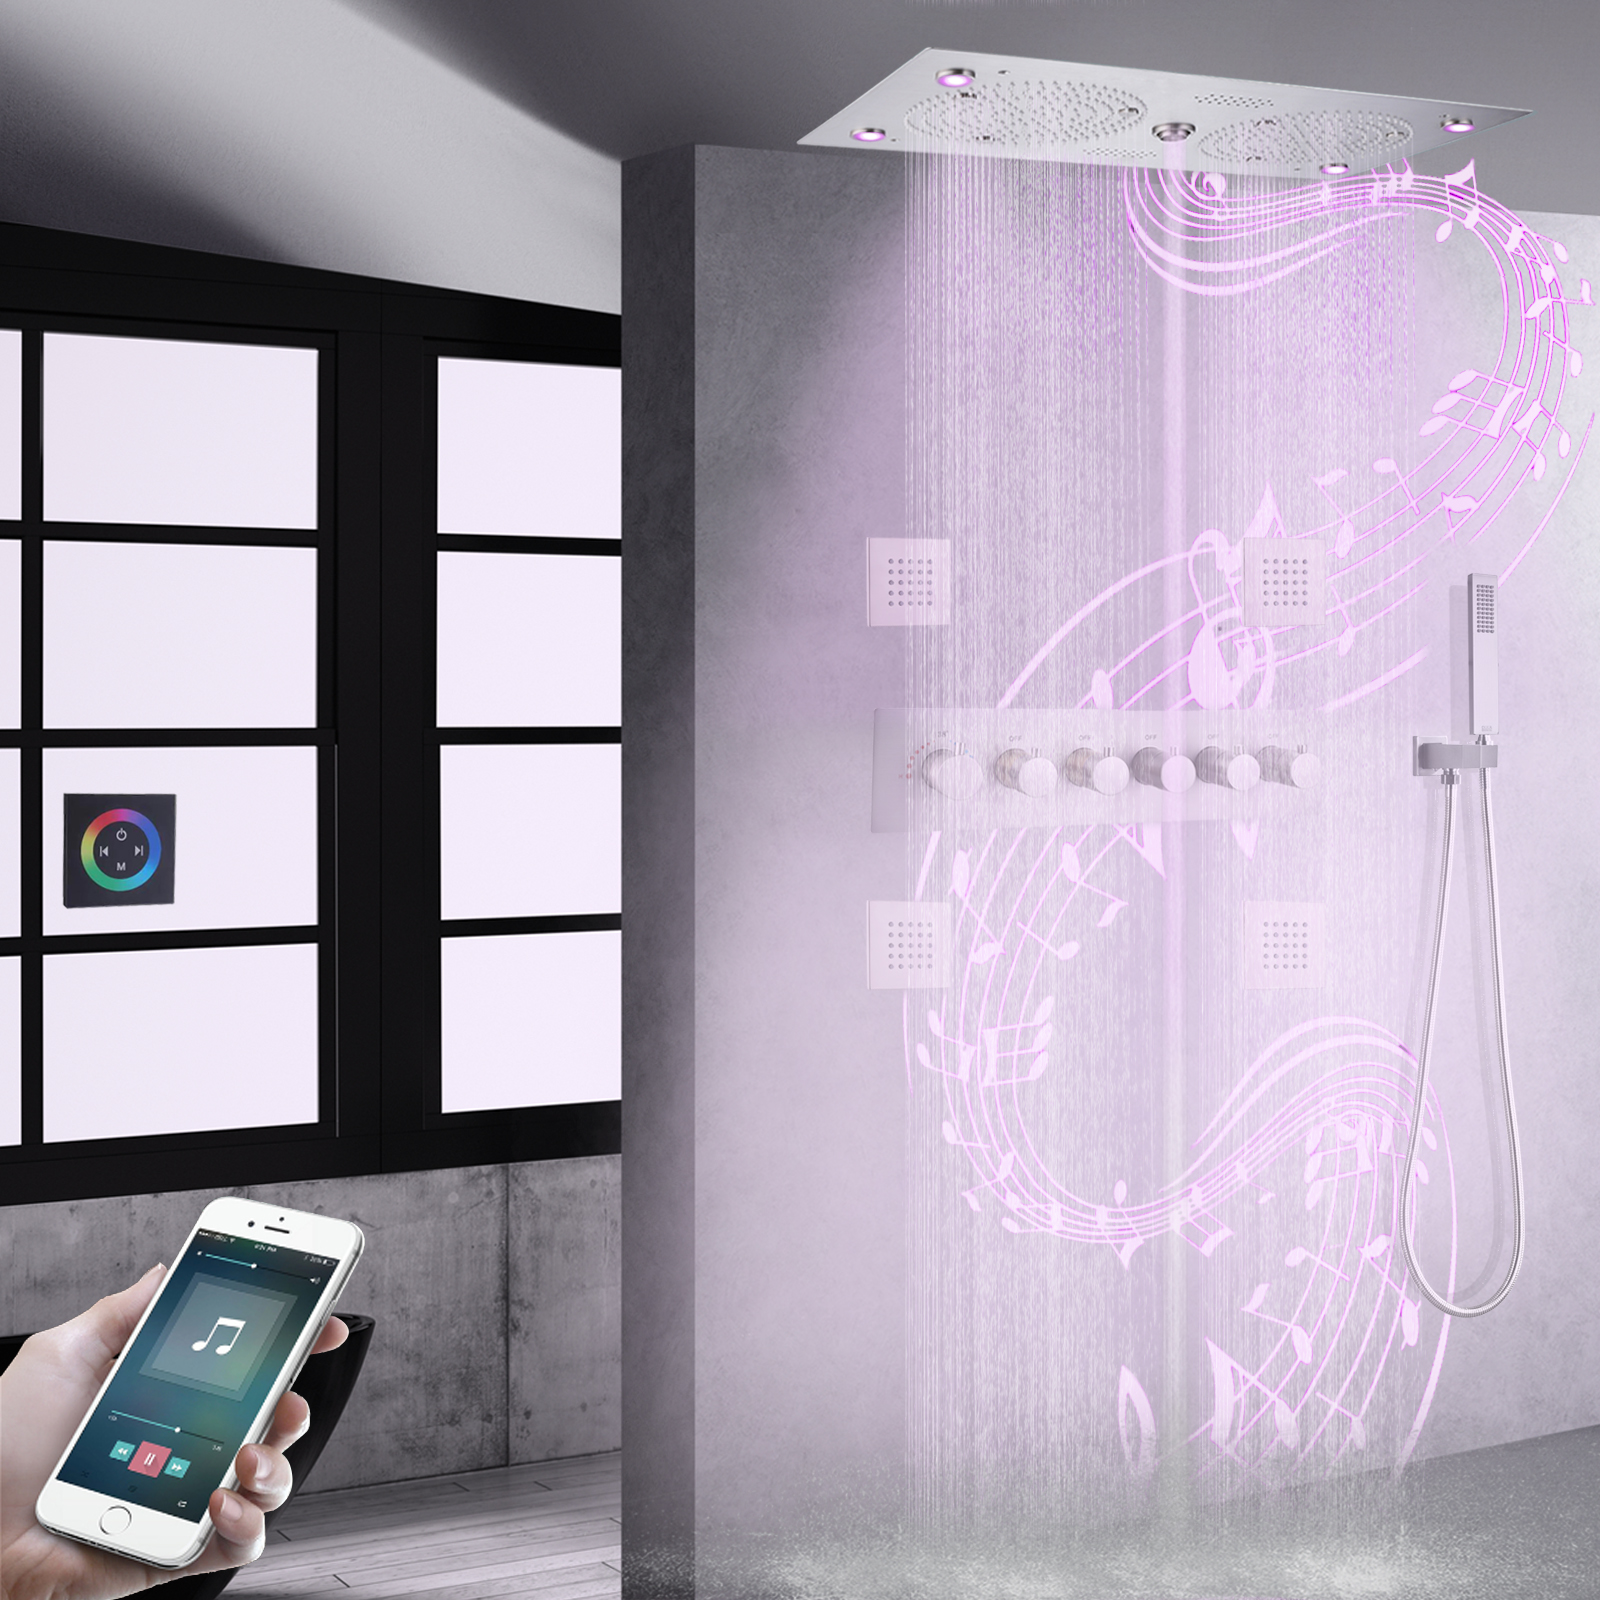 Cabezal de ducha de níquel cepillado empotrado en el techo, baño LED de 620x320mm con música, juego de grifo de ducha